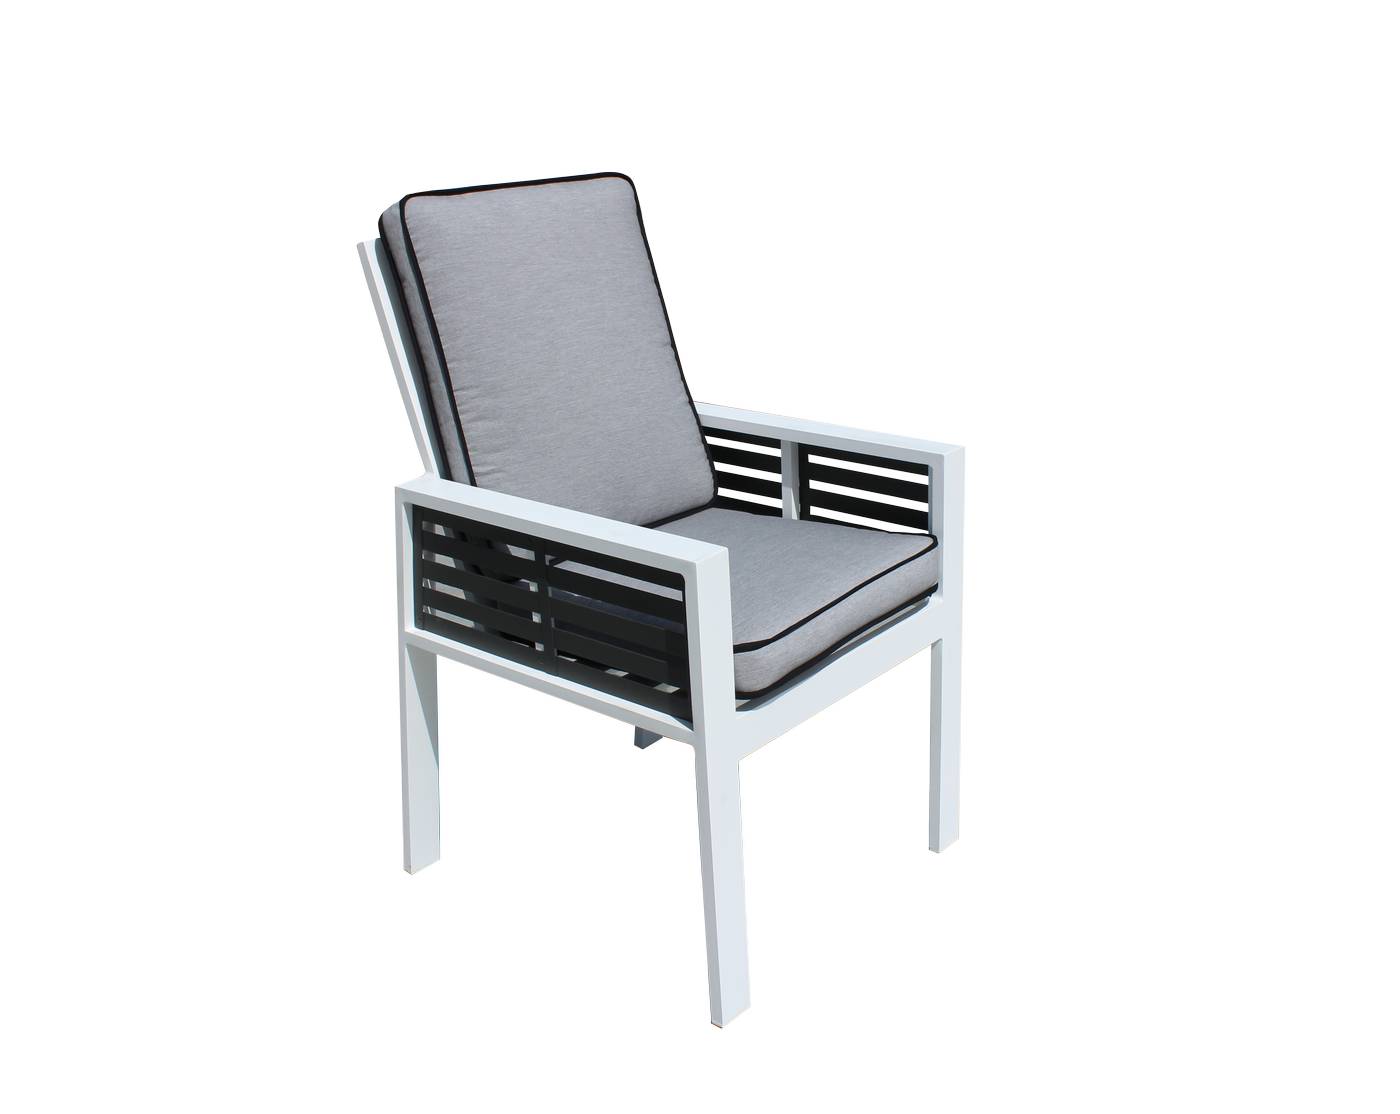 Exclusivo sillón de comedor de aluminio bicolor. Con cómodos cojines asiento y respaldo desenfundables.